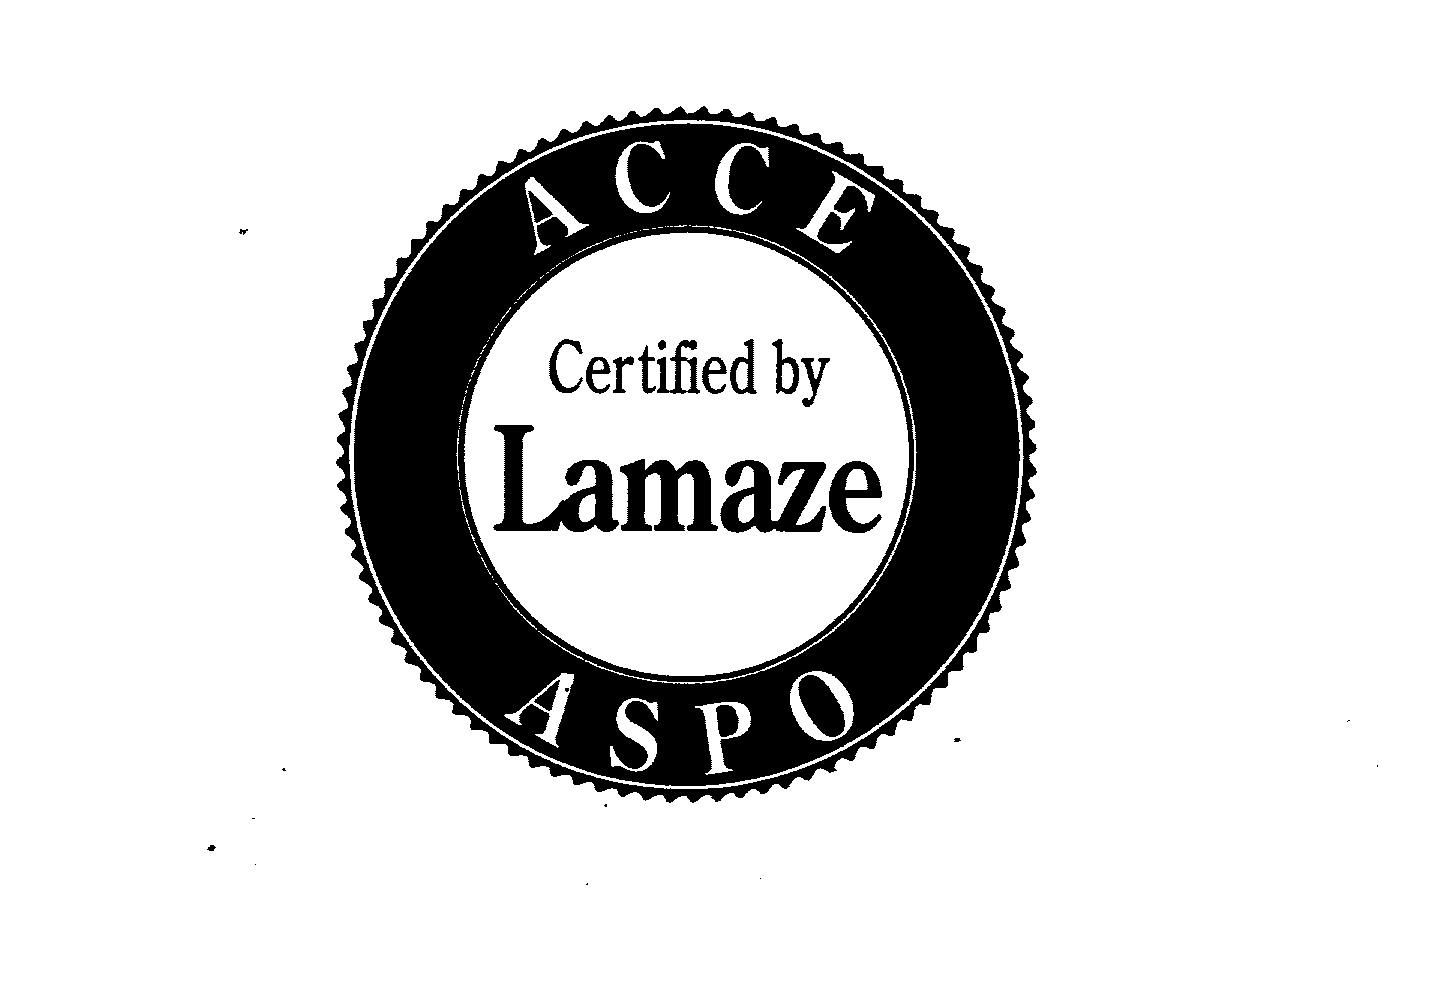  ACCE ASPO CERTIFIED BY LAMAZE